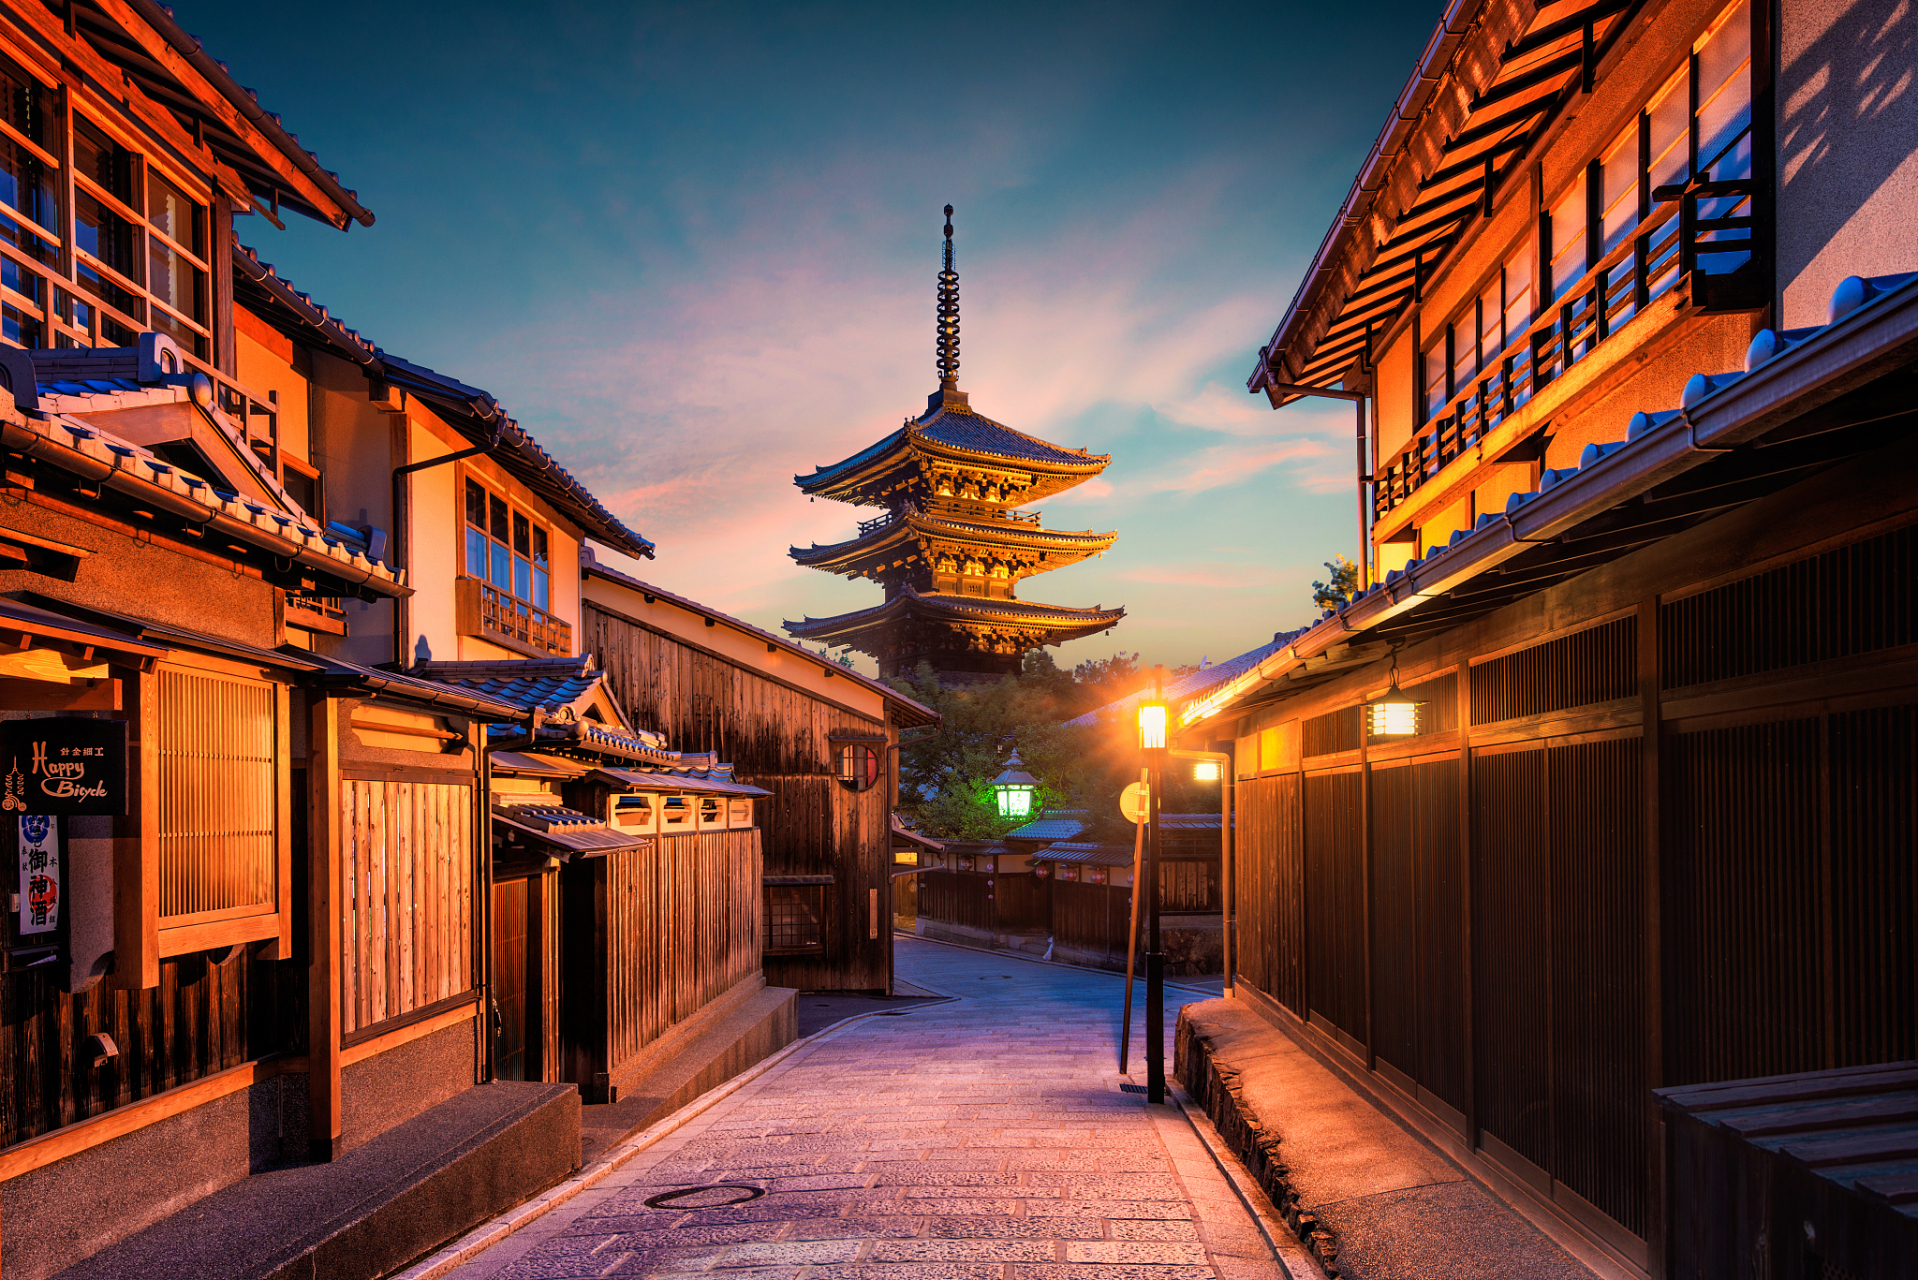 京都是日本最著名的历史和文化之都之一,拥有许多古老的寺庙,神赏和